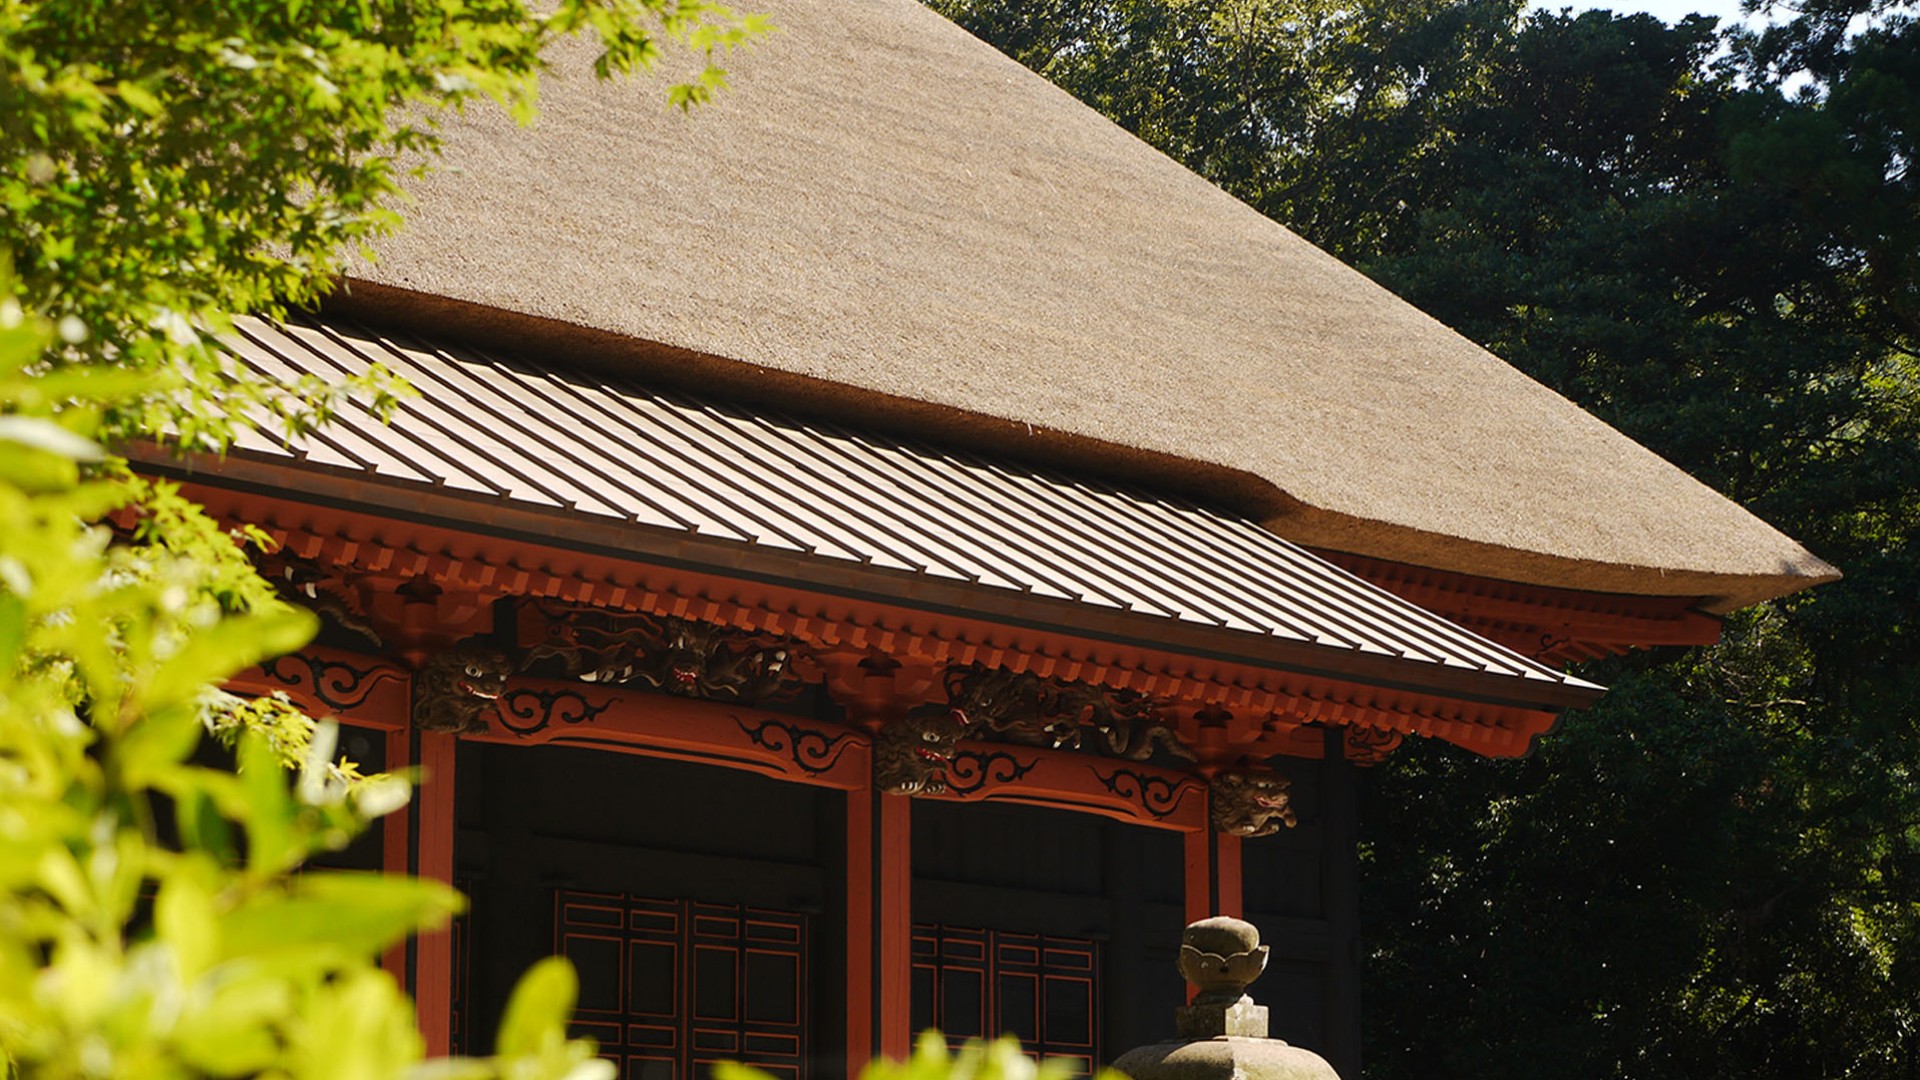 Hinata Yakushi Treasure Hall (Yakushi Nyorai, Ba Yakushi của Nhật Bản)